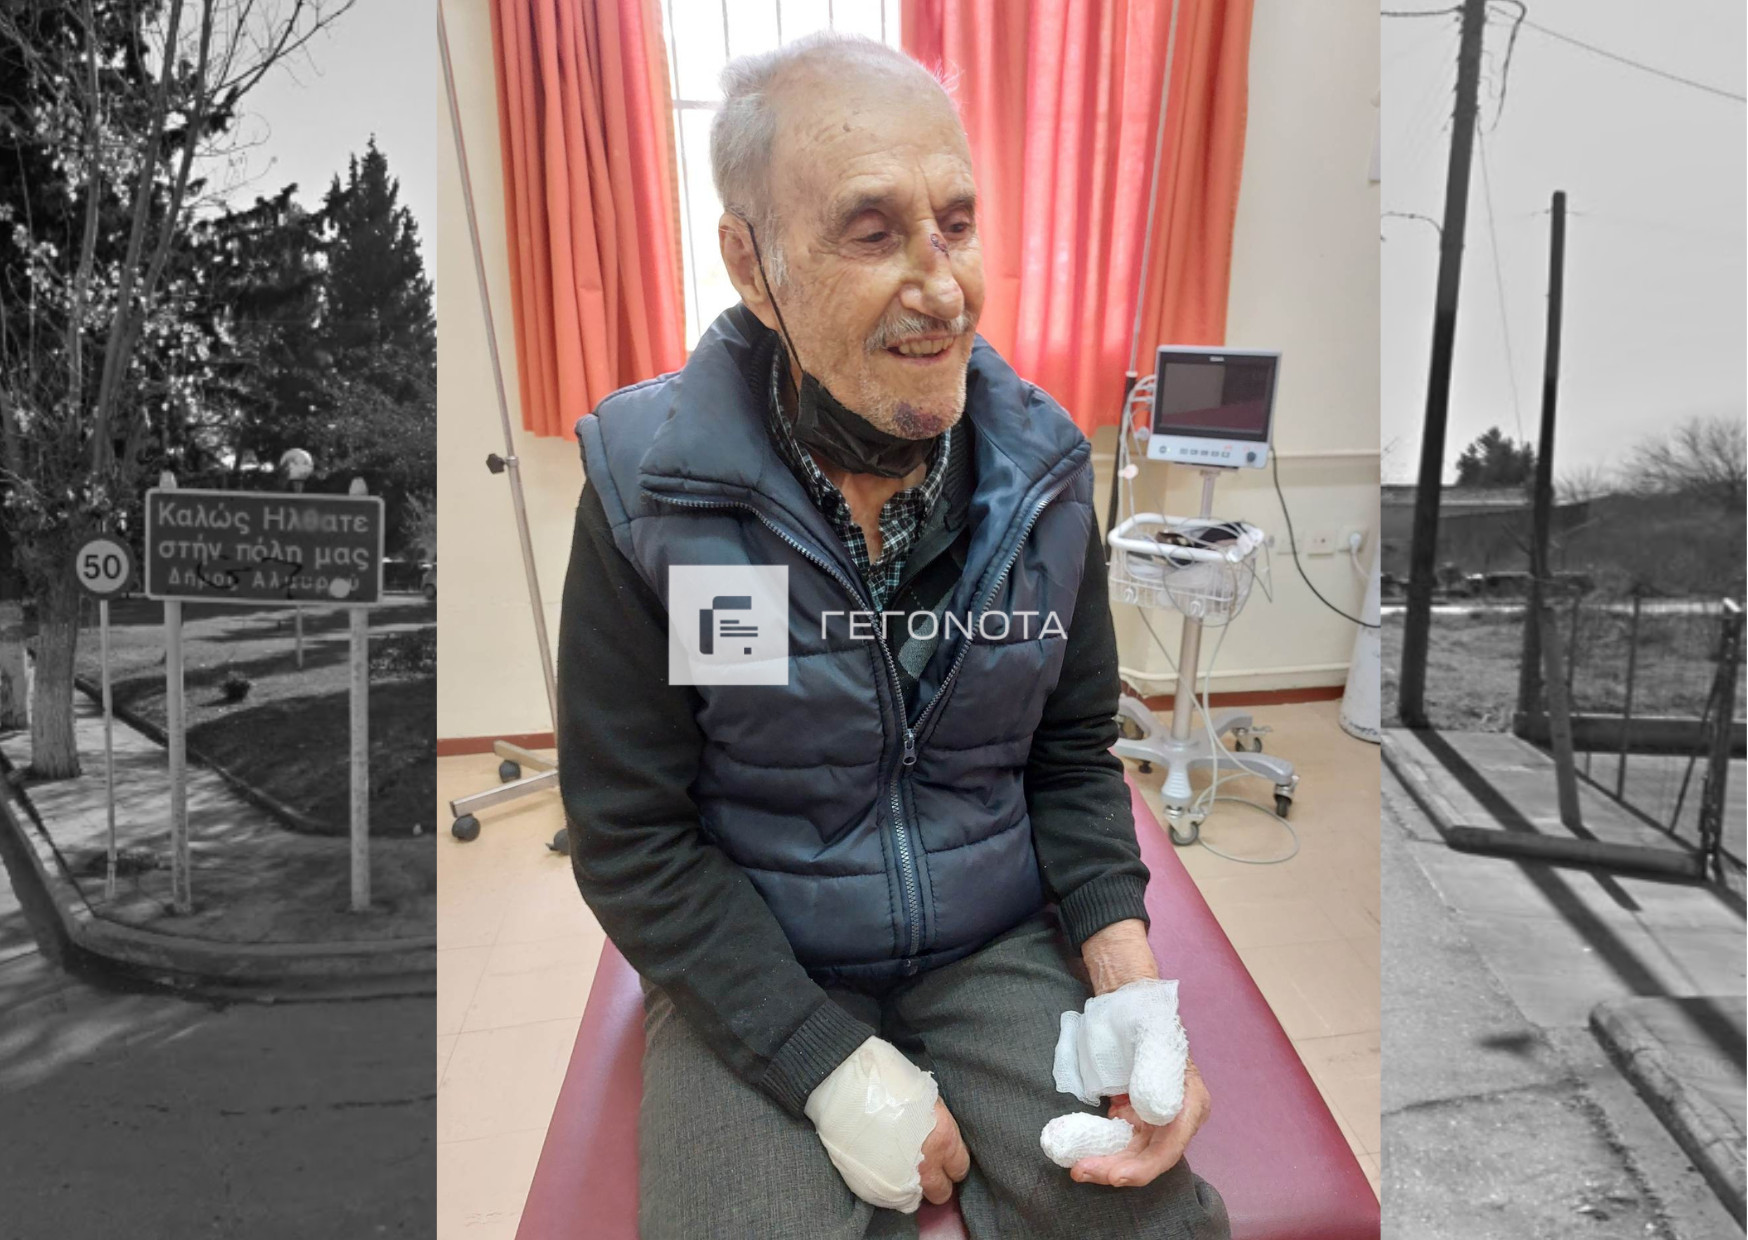 Βόλος: Εφιαλτικές στιγμές για 93χρονο - Δέχτηκε άγρια επίθεση από αδέσποτα - ΦΩΤΟ